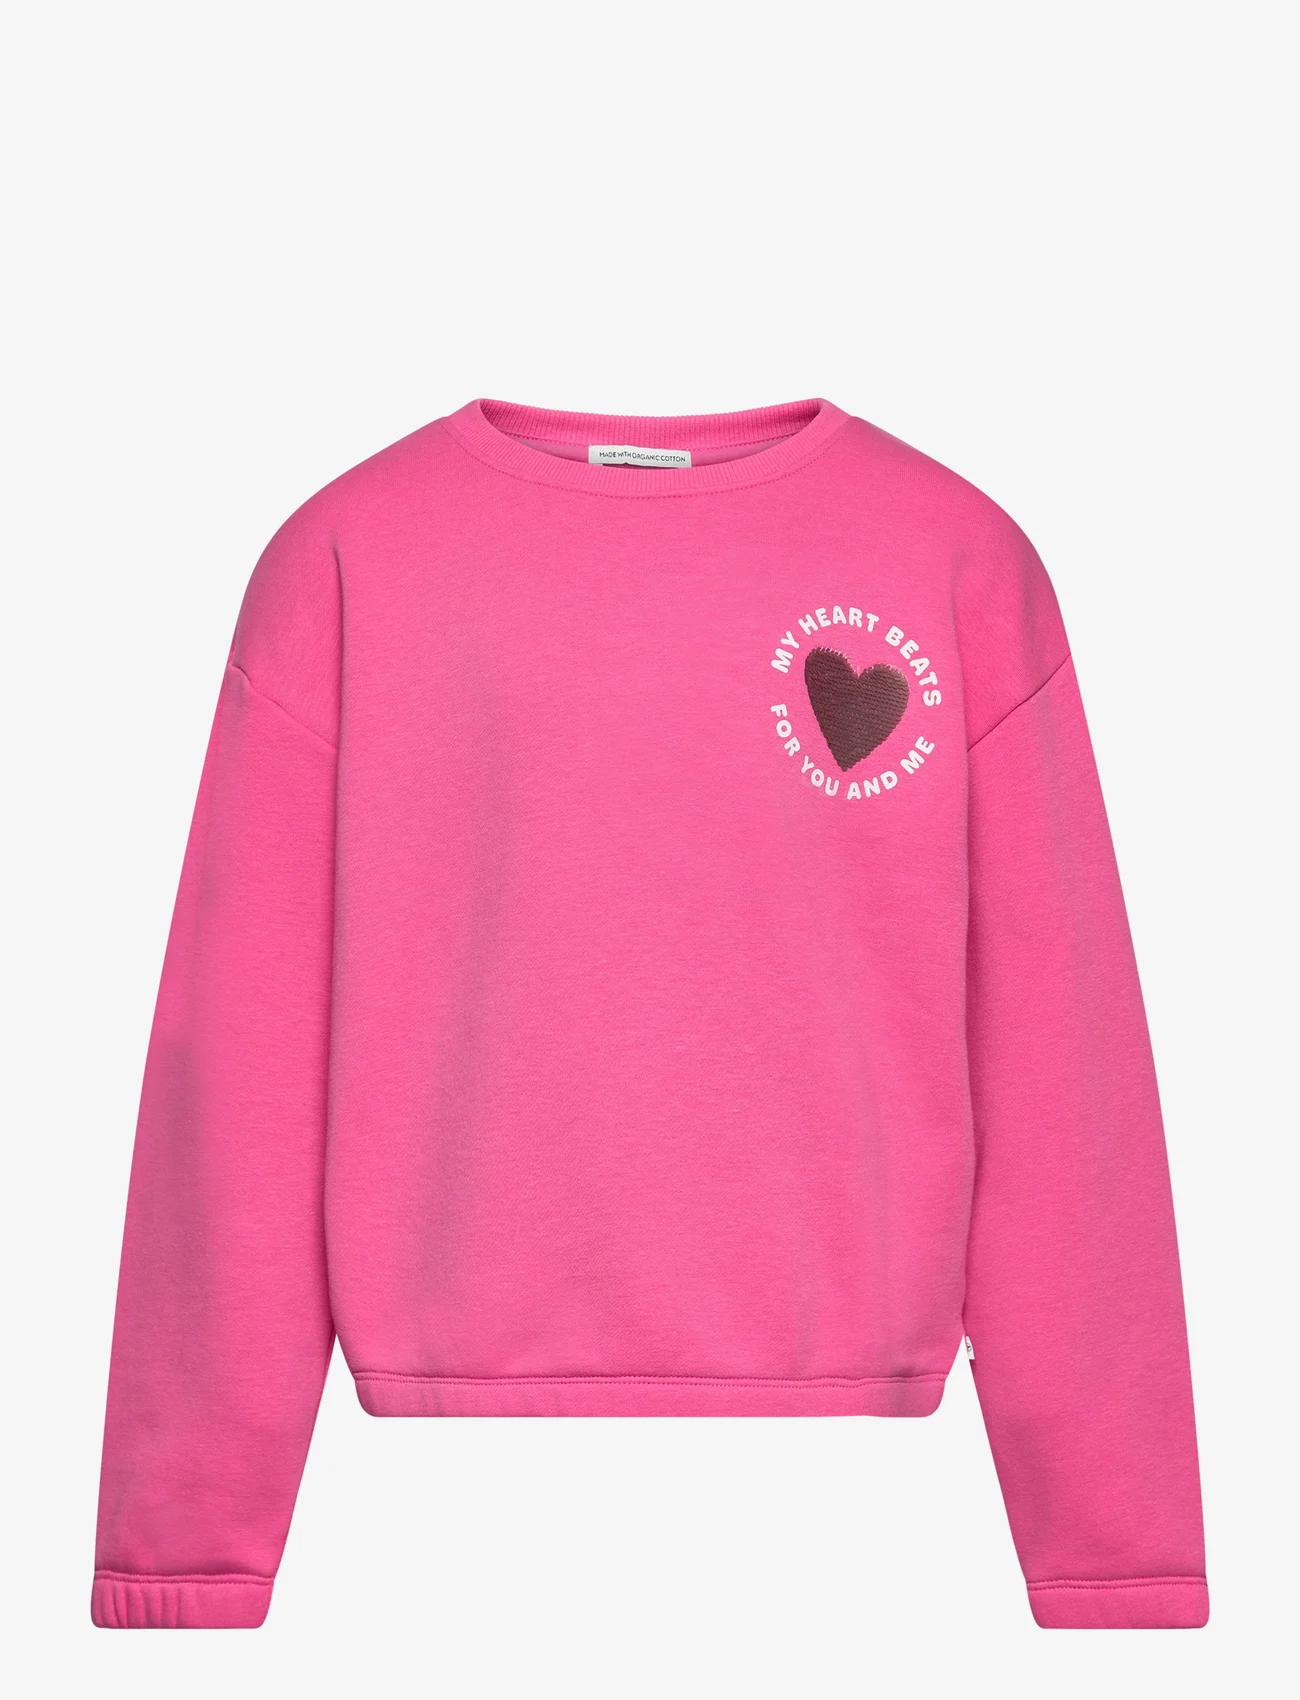 Tom Tailor - sequin artwork sweatshirt - mažiausios kainos - carmine pink - 1